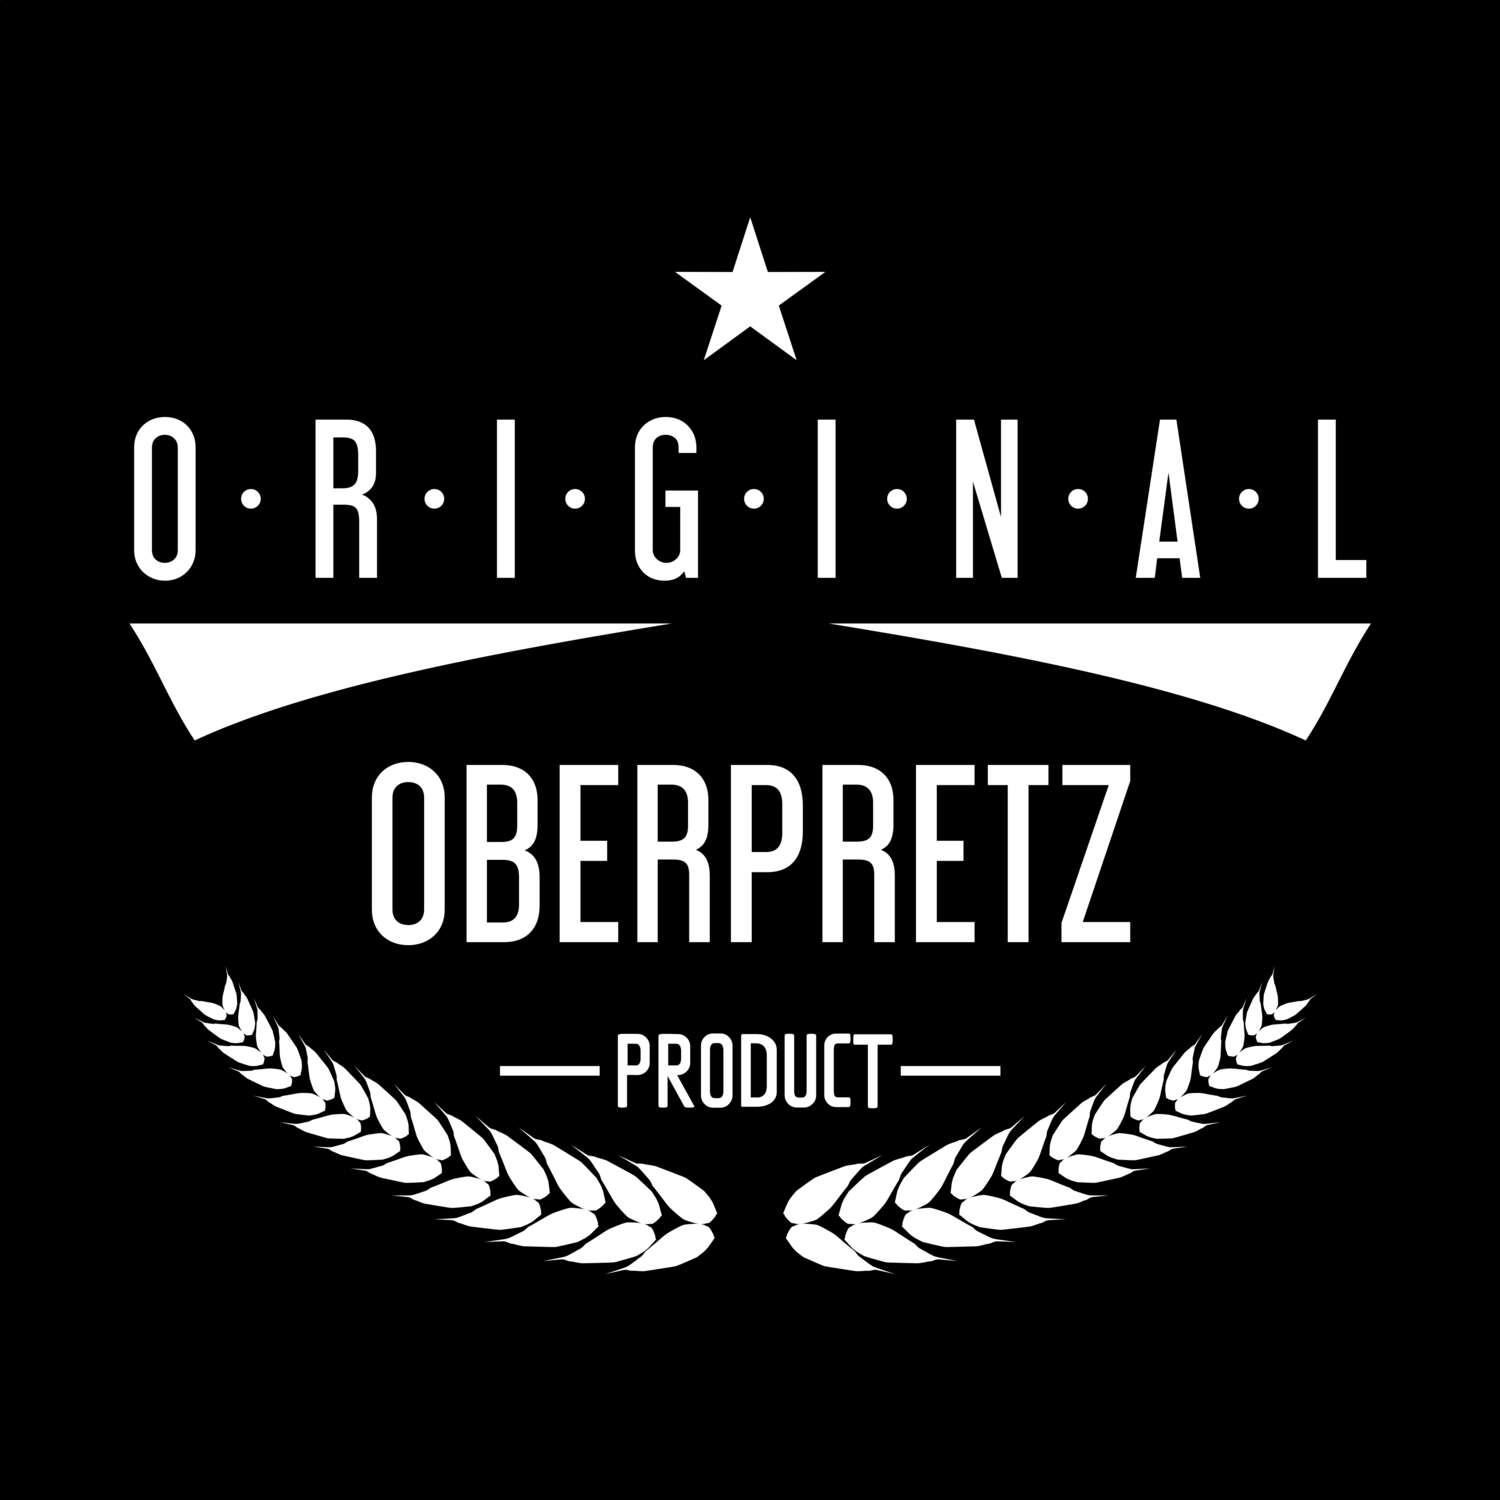 Oberpretz T-Shirt »Original Product«